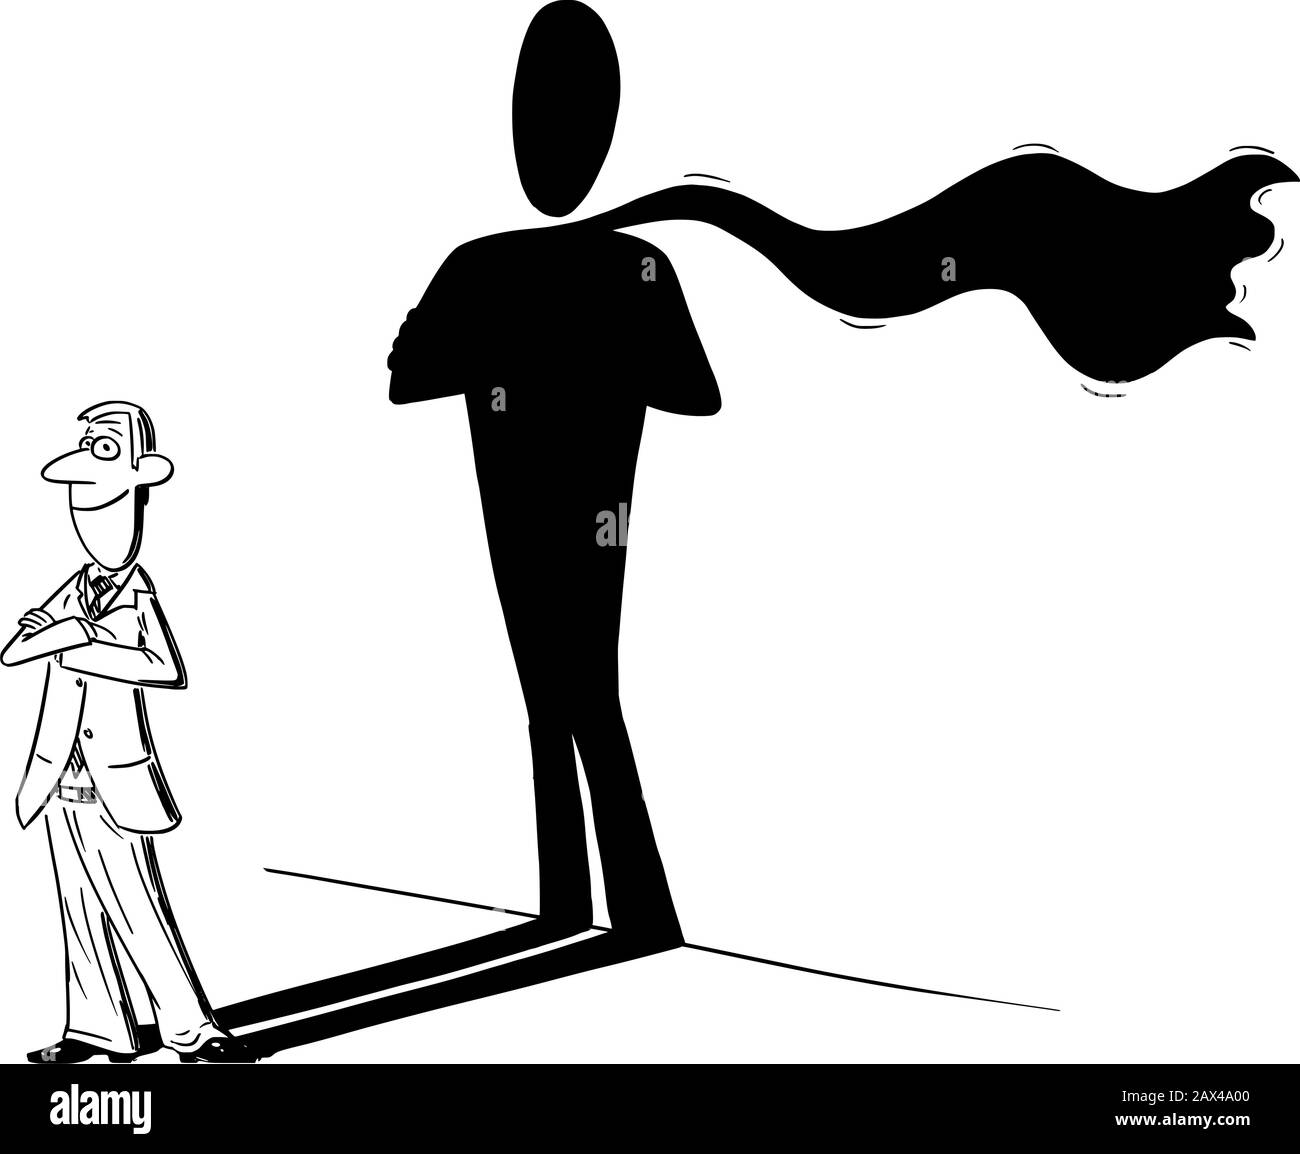 Vector lustige Comic-Cartoon-Zeichnung von Mann oder Geschäftsmann und seinem Superhelden oder heldenhaften Schatten an der Wand. Geschäftskonzept von Erfolg und Selbstvertrauen. Stock Vektor